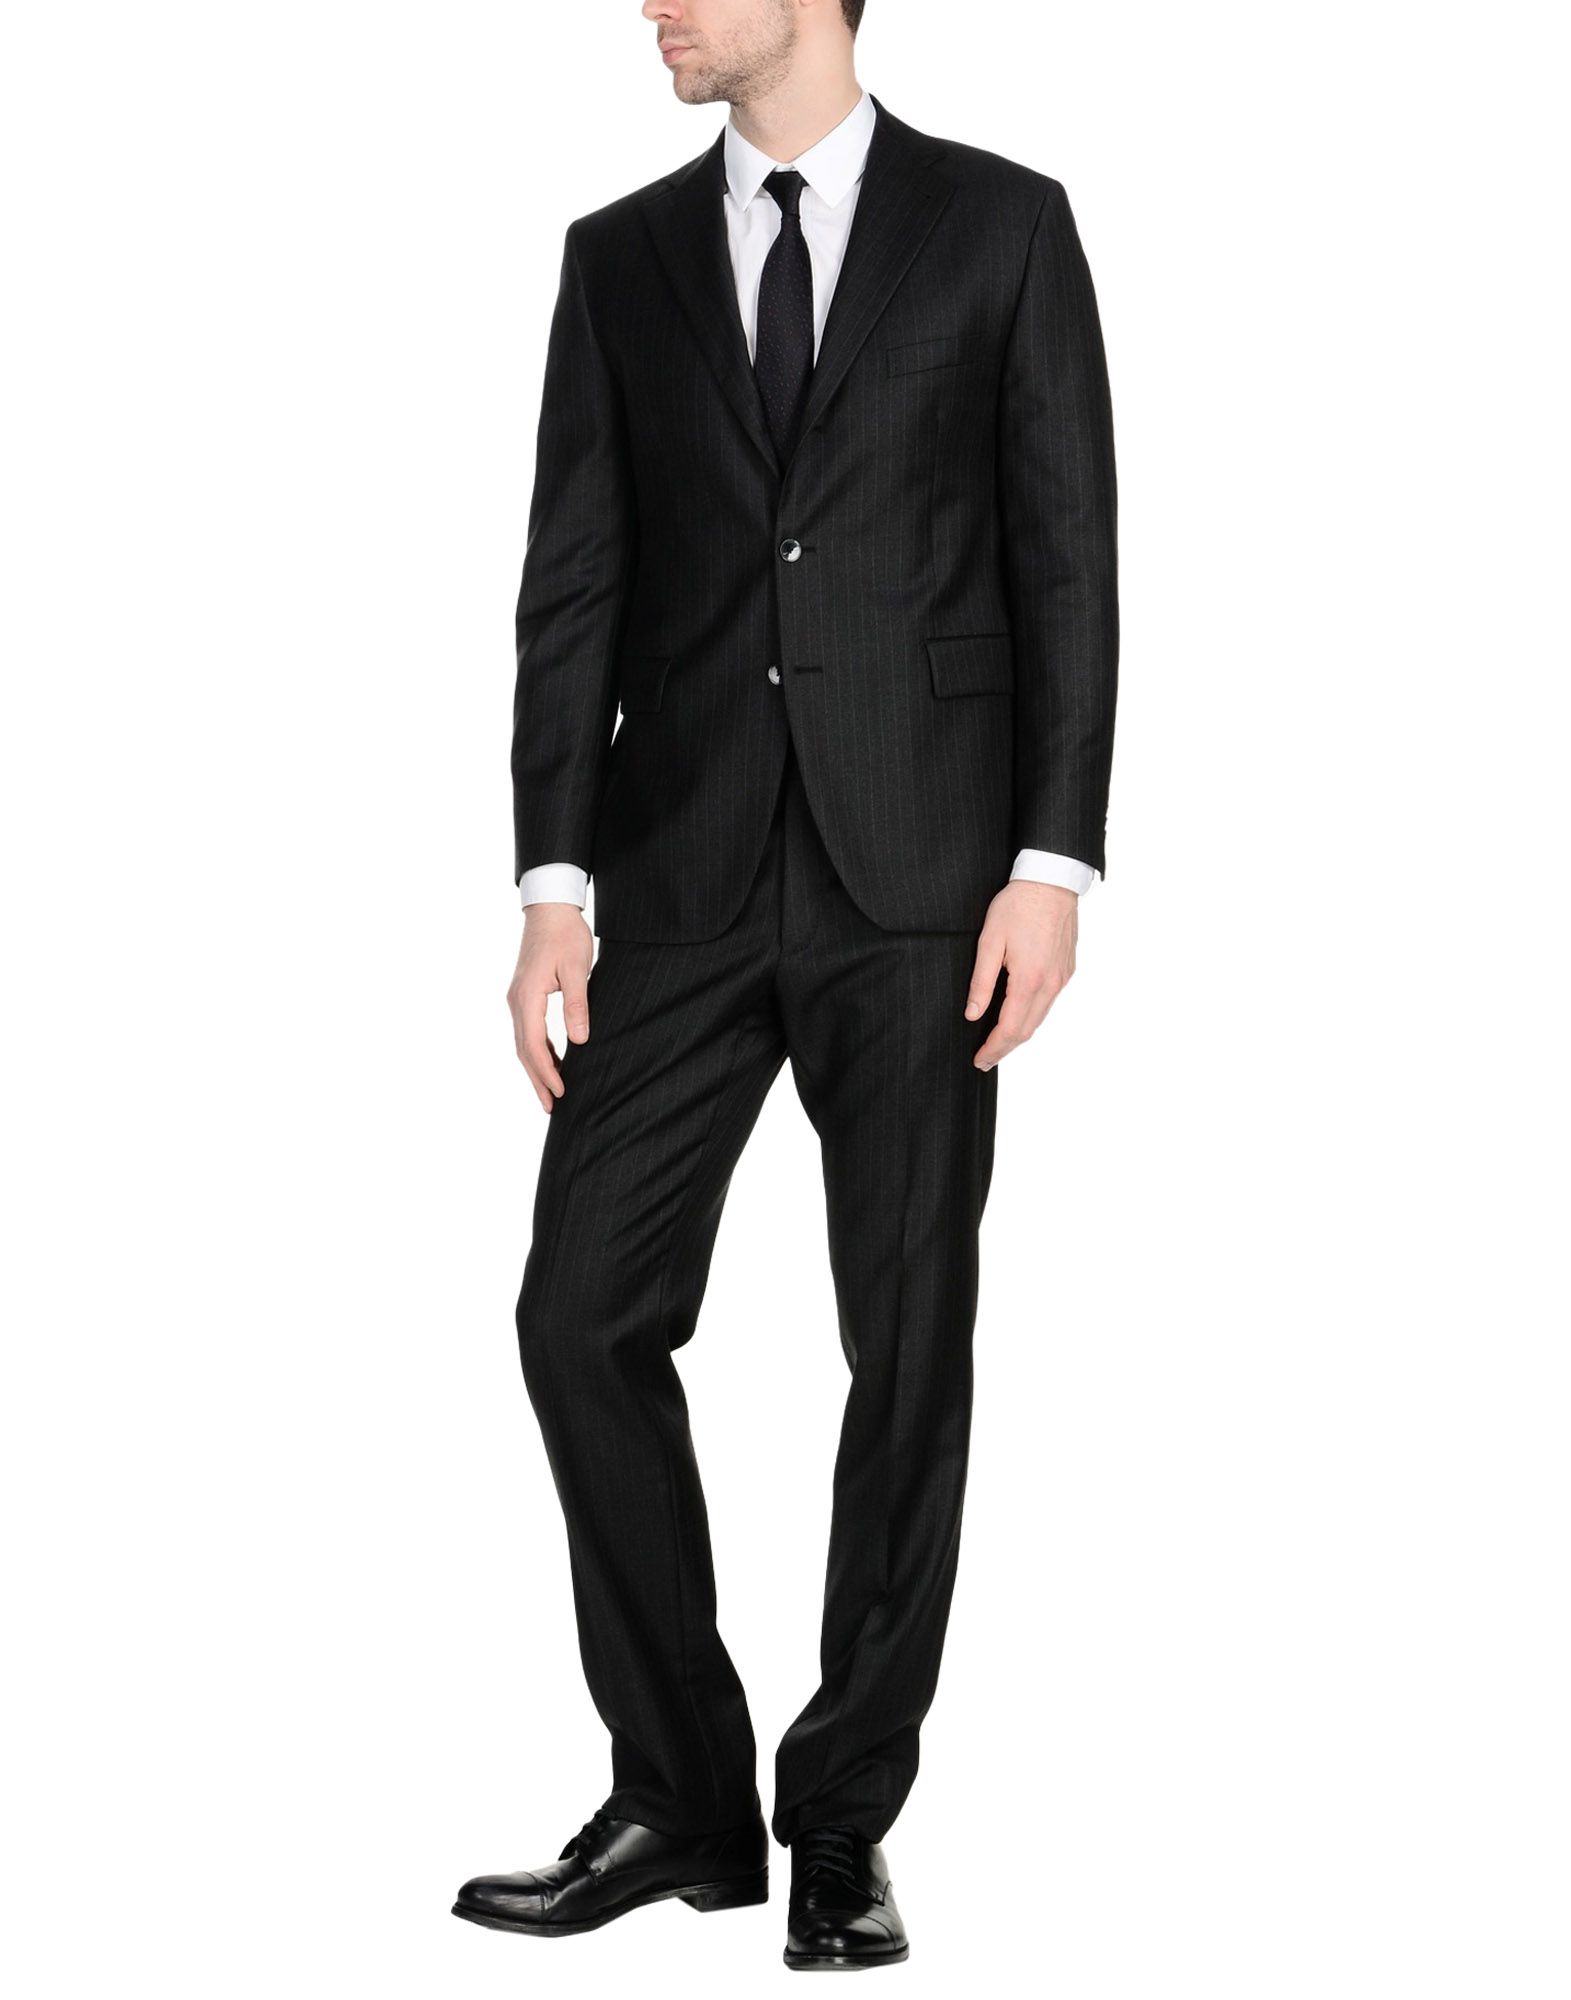 《送料無料》STEFANO SARTORI メンズ スーツ スチールグレー 50 バージンウール 100%